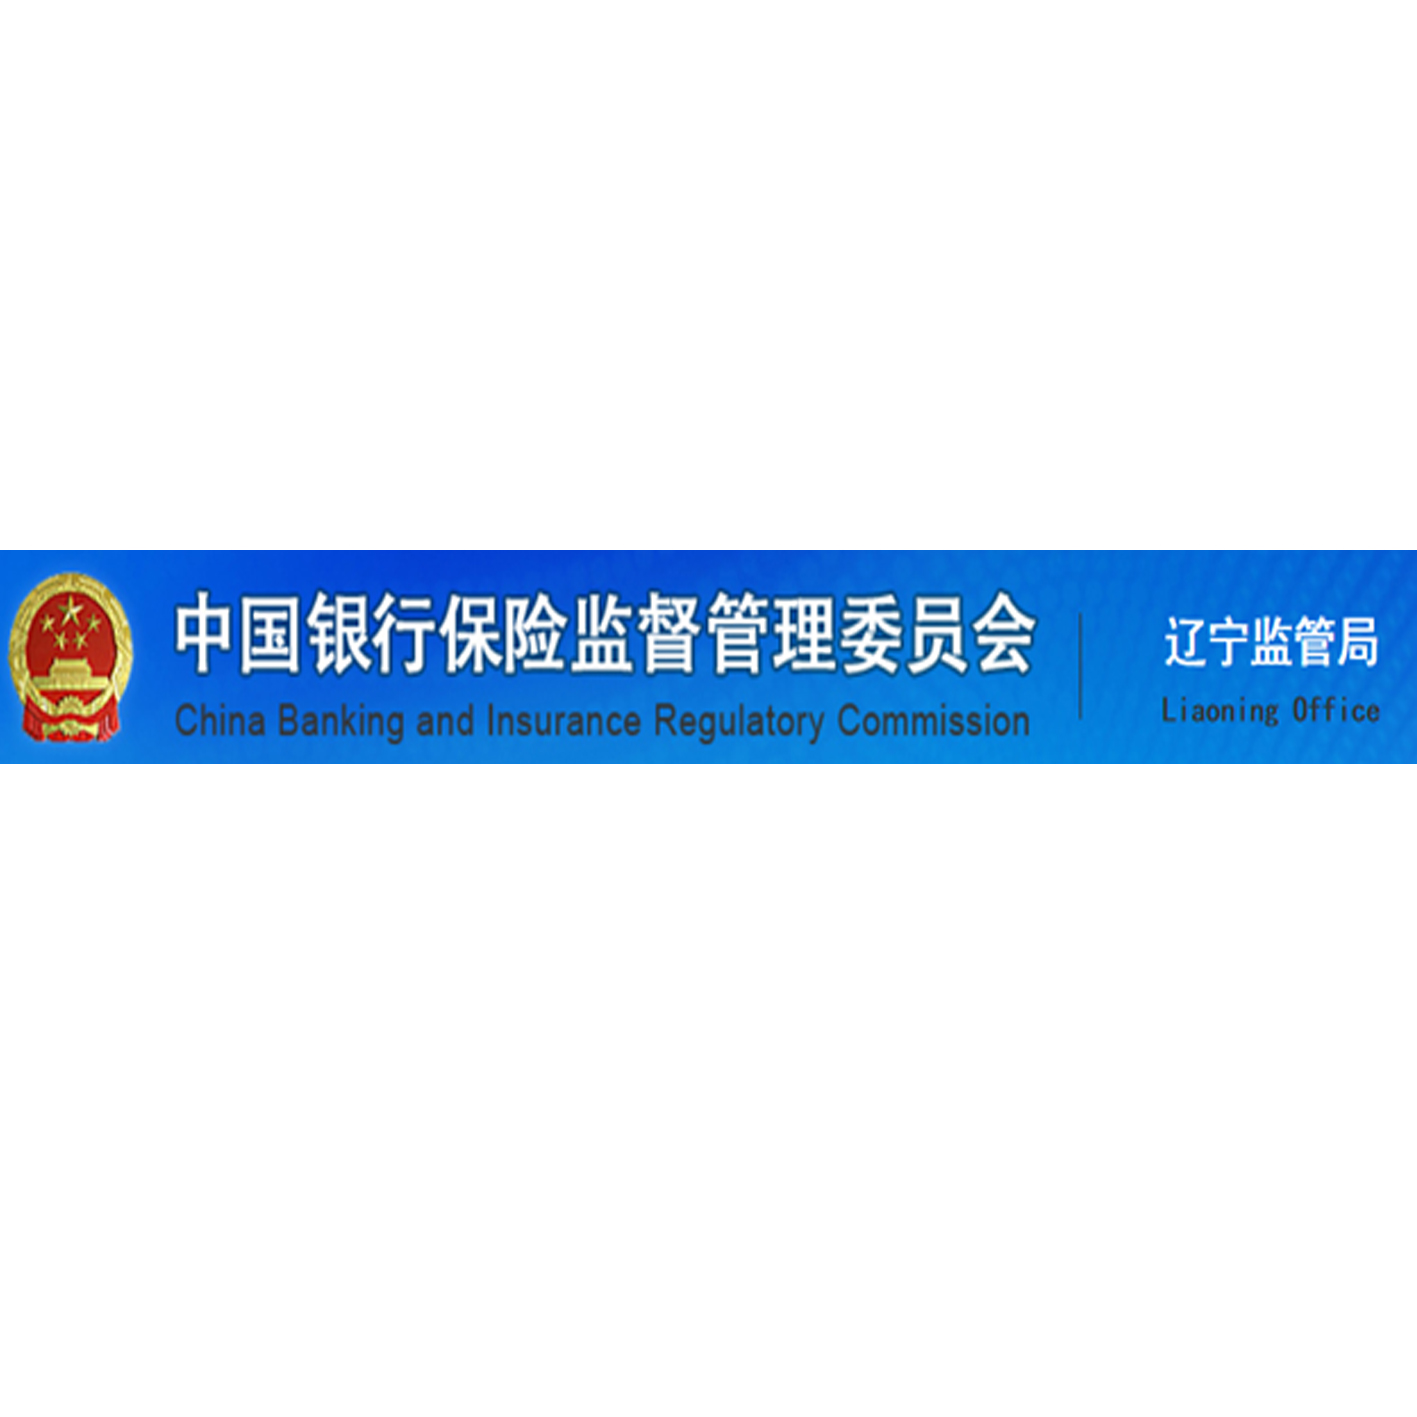 中國銀行保險監督管理委員會遼寧監管局